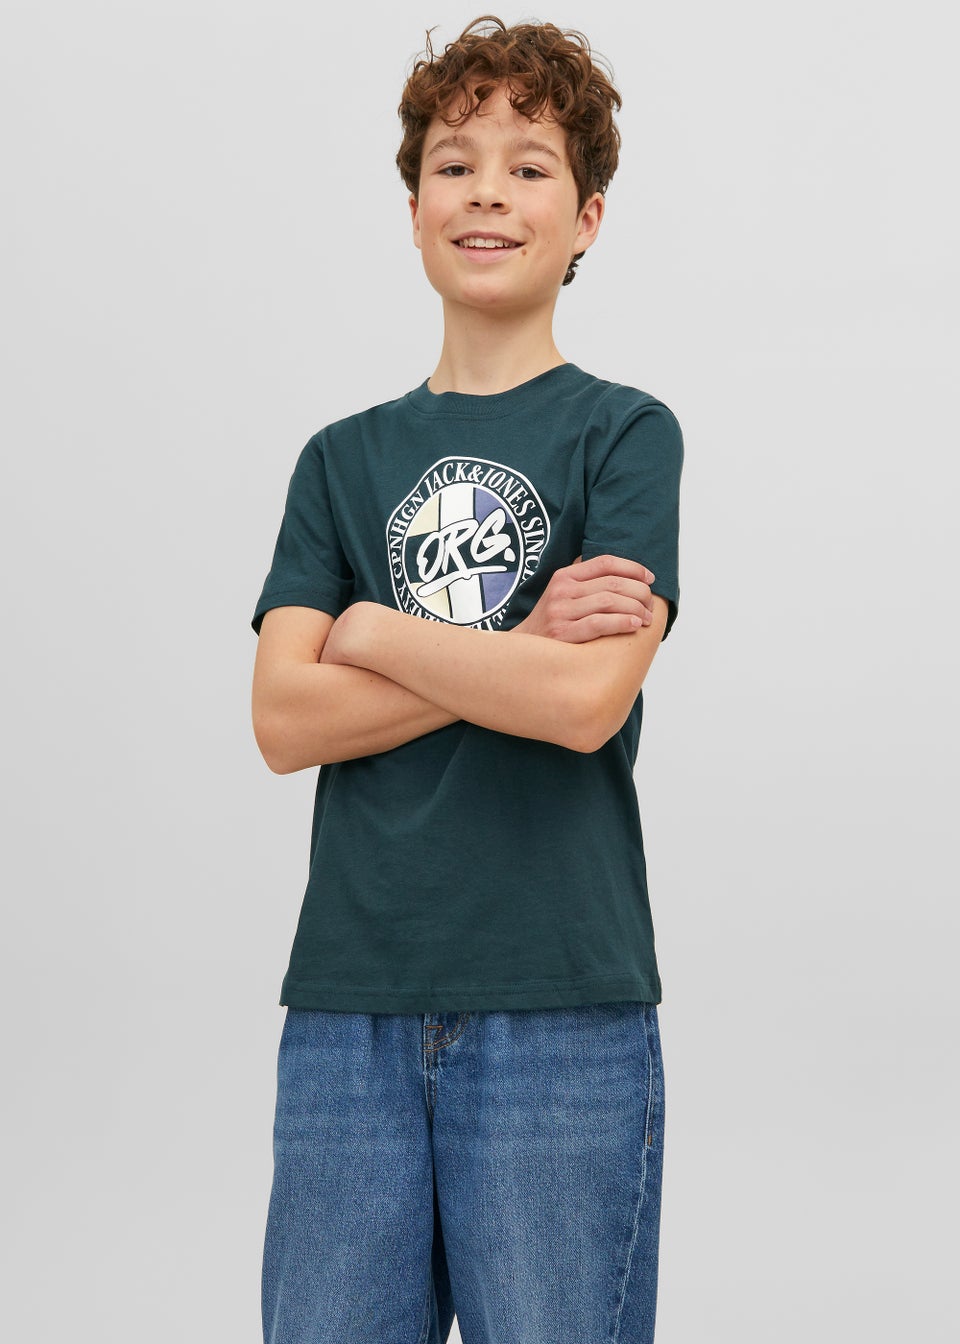 Jack & Jones Junior Green Arthur T-Shirt (6-16yrs)